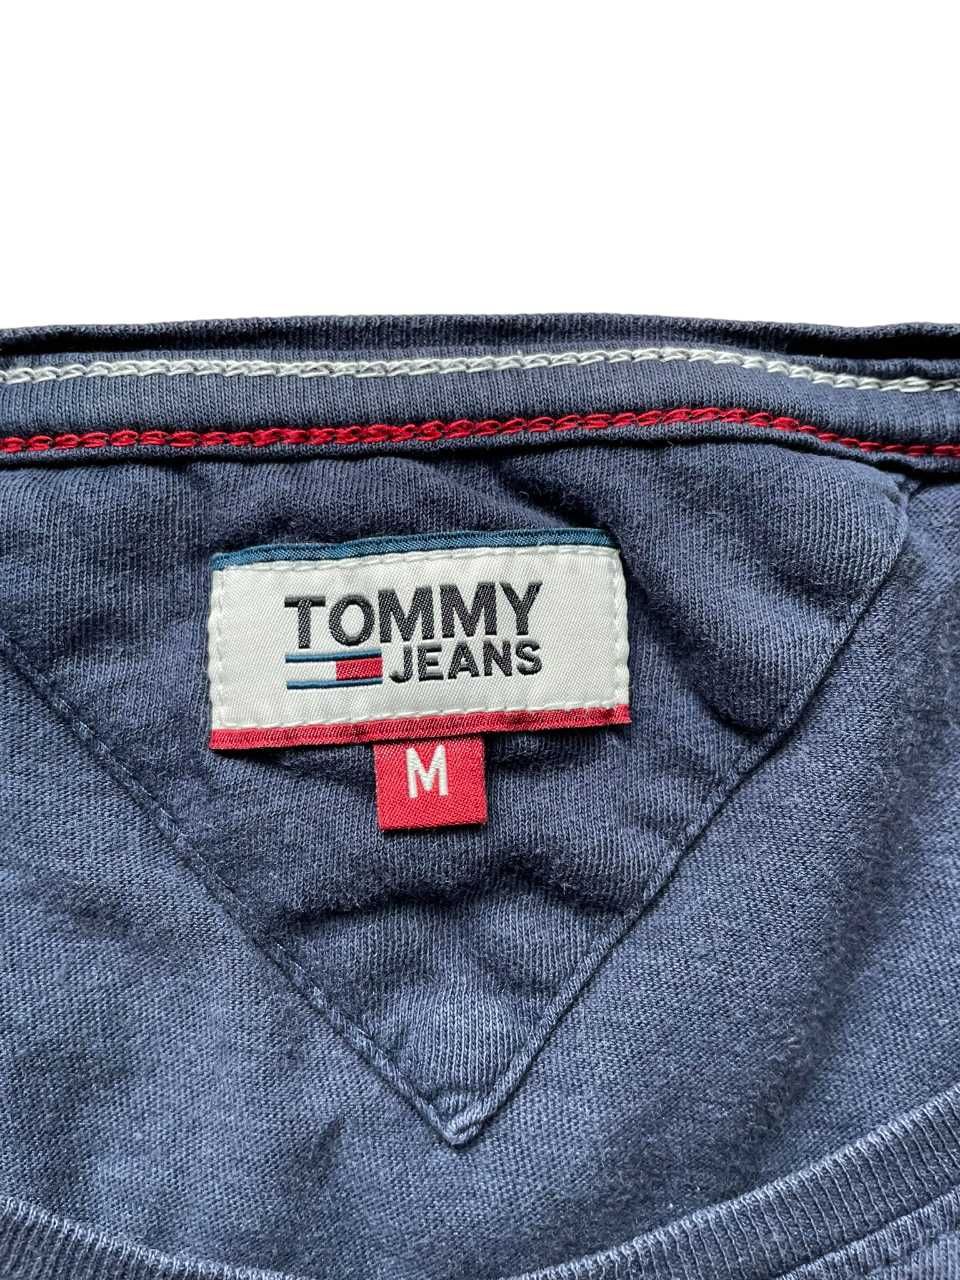 Koszulka Tommy Jeans M granatowa